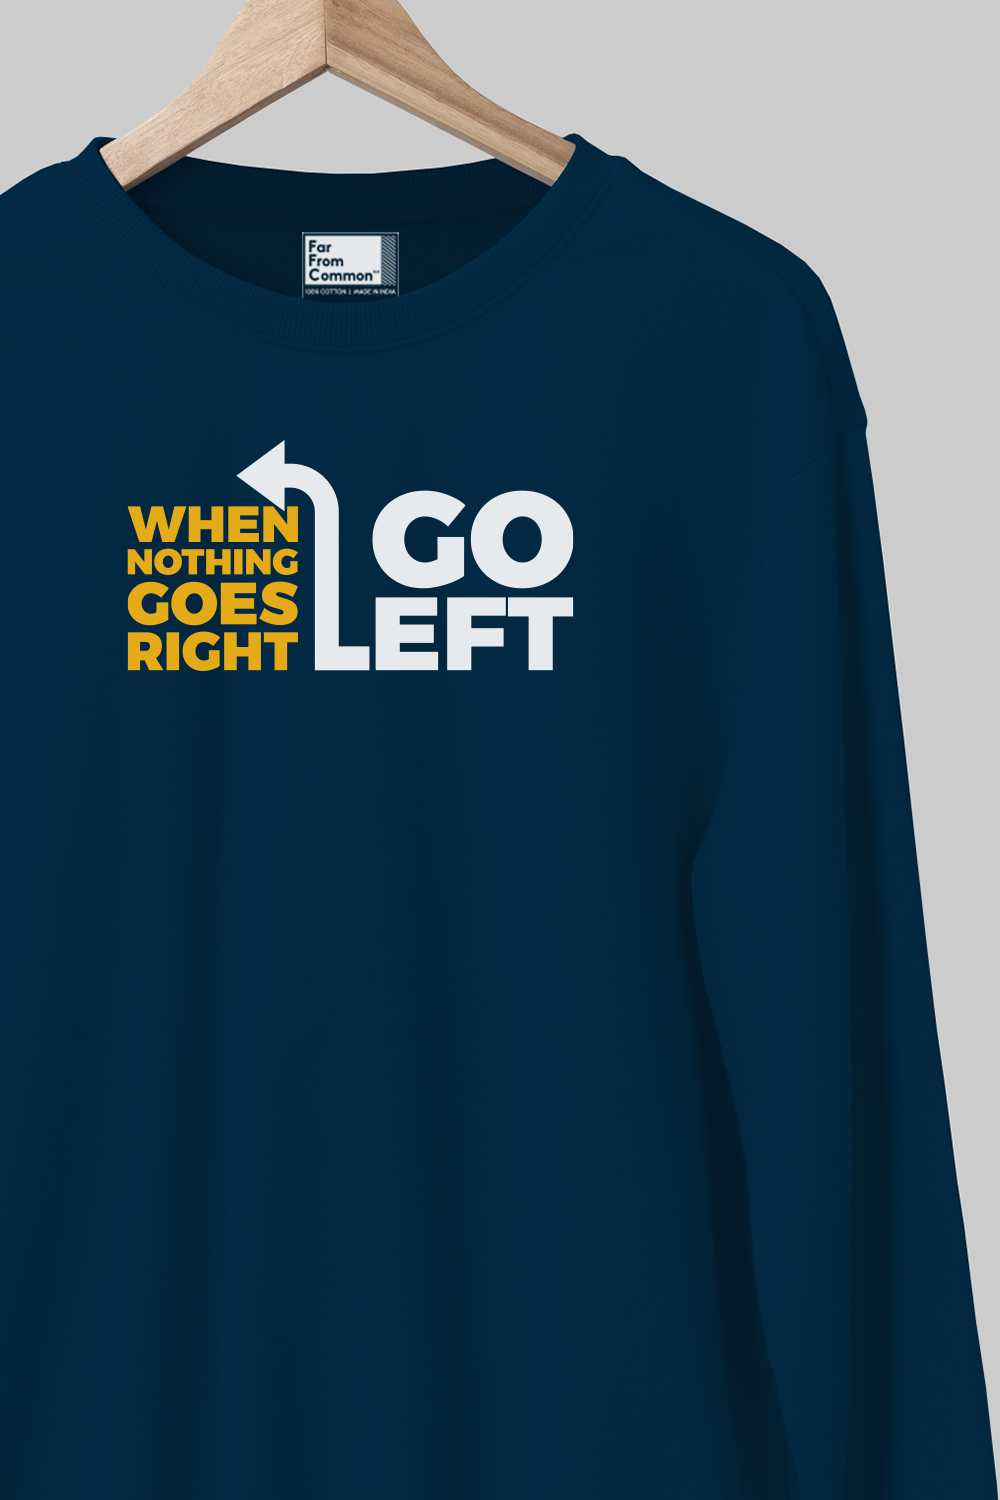 Go Left Navy Blue Sweatshirt